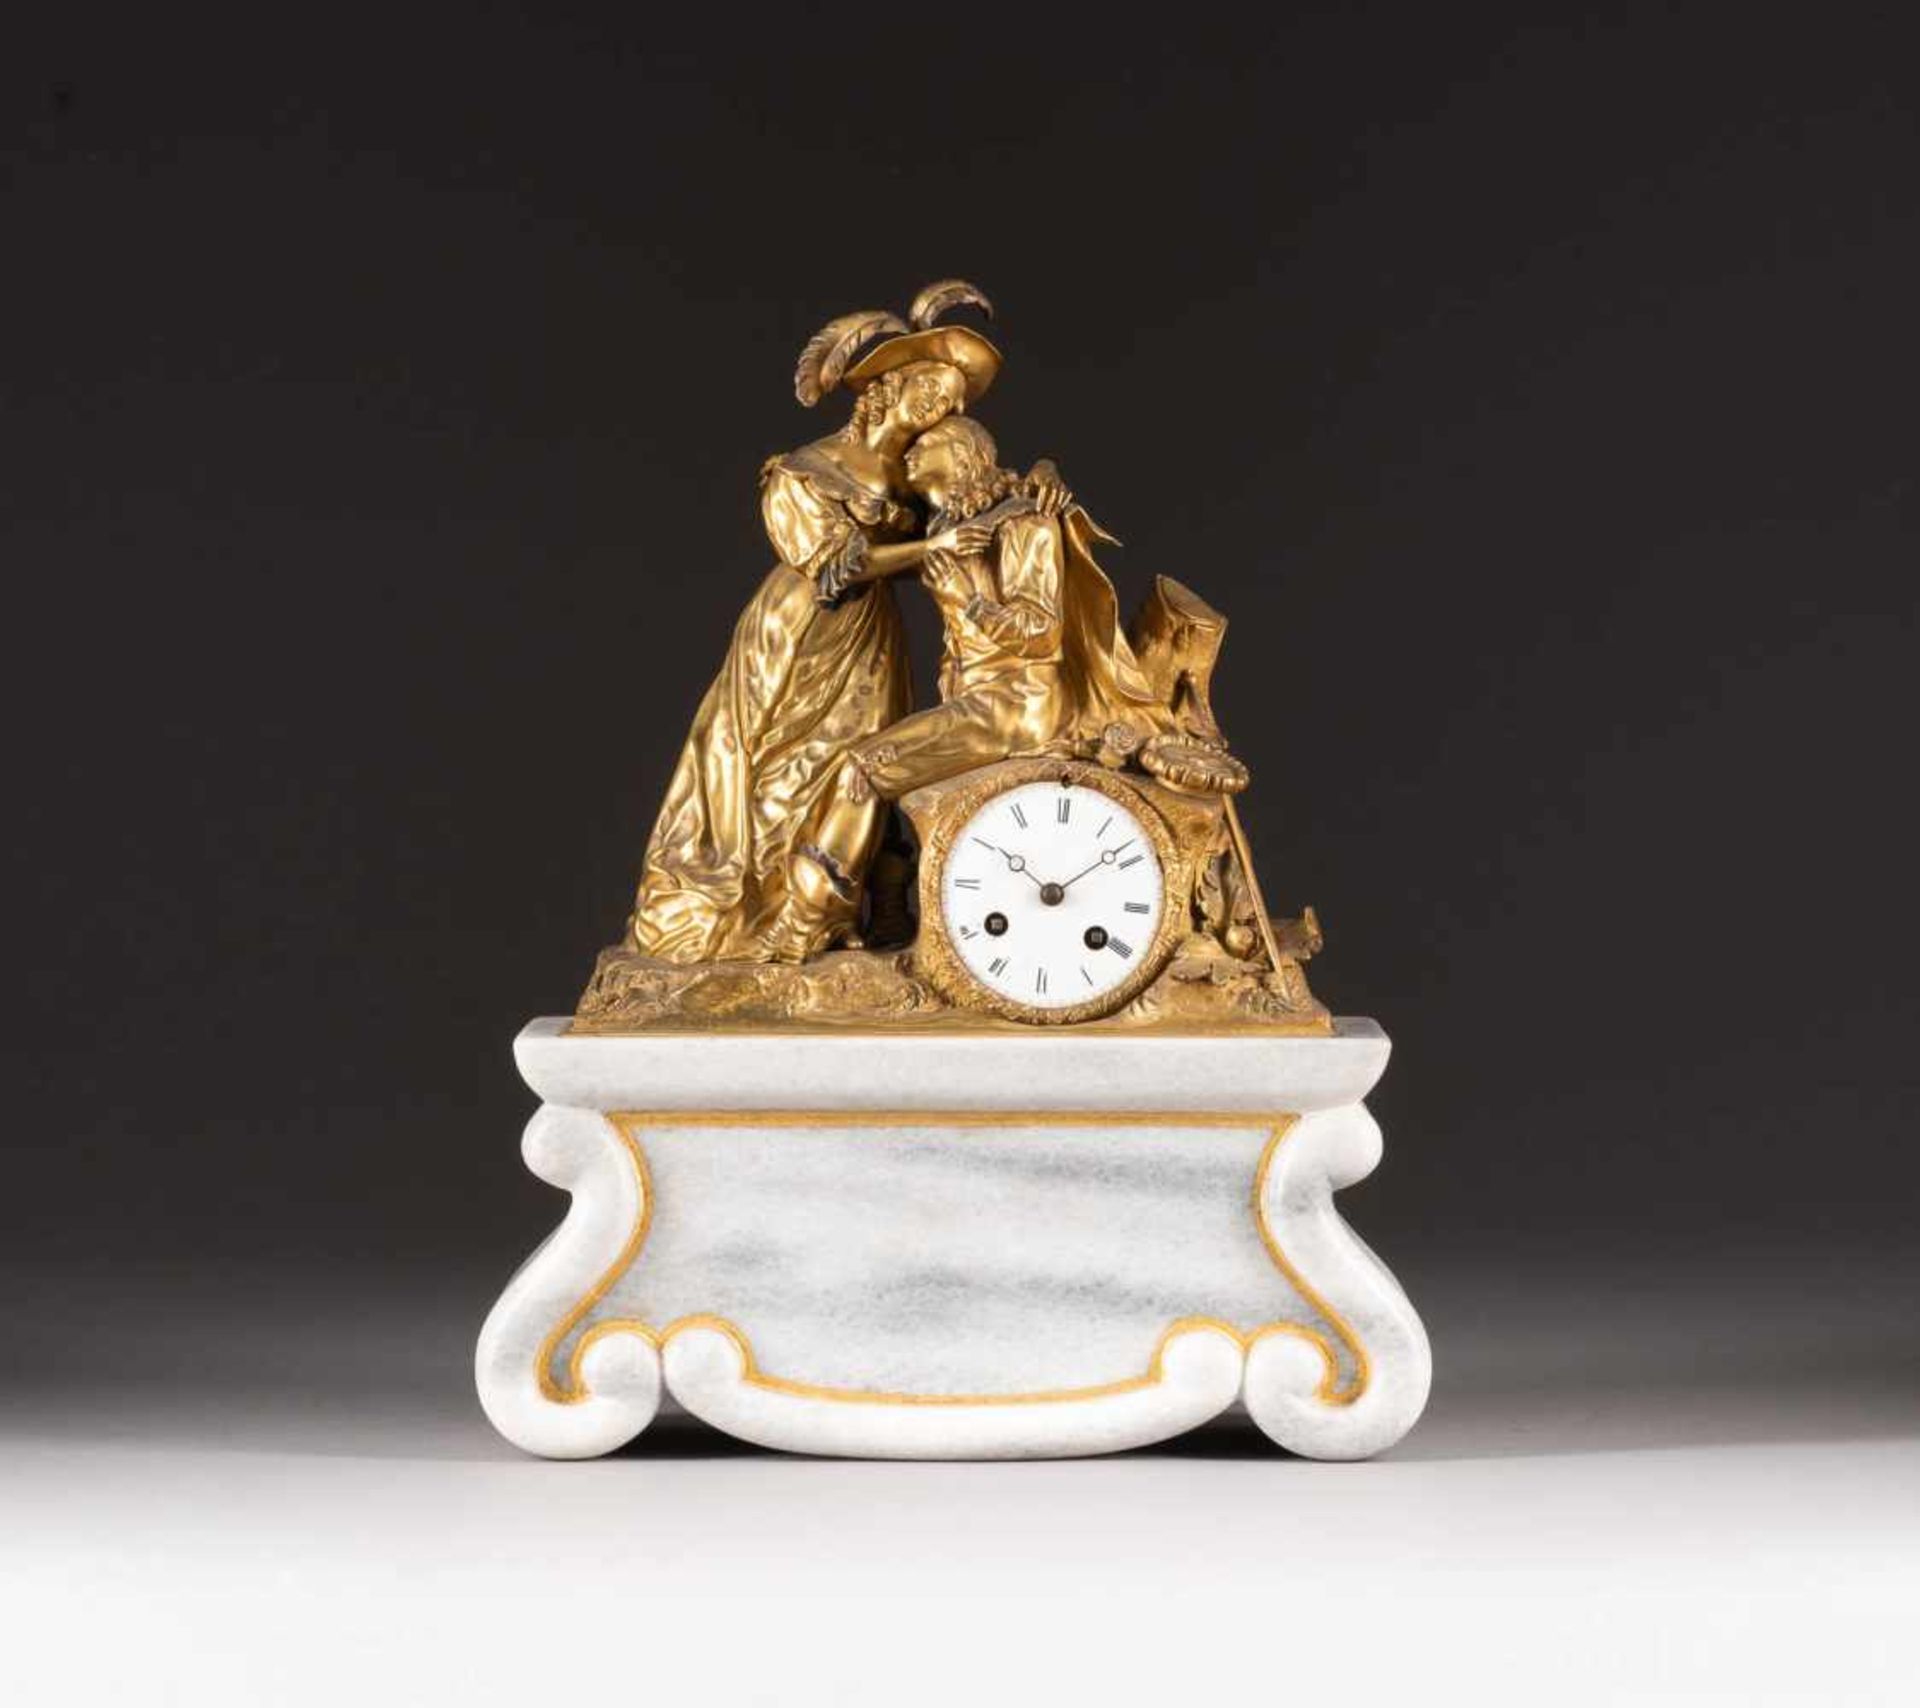 KAMINUHR 'LIEBESPAAR' Frankreich, Mitte 19. Jh. Bronze, vergoldet, grauer Marmor. Ges.- H. 44 cm.